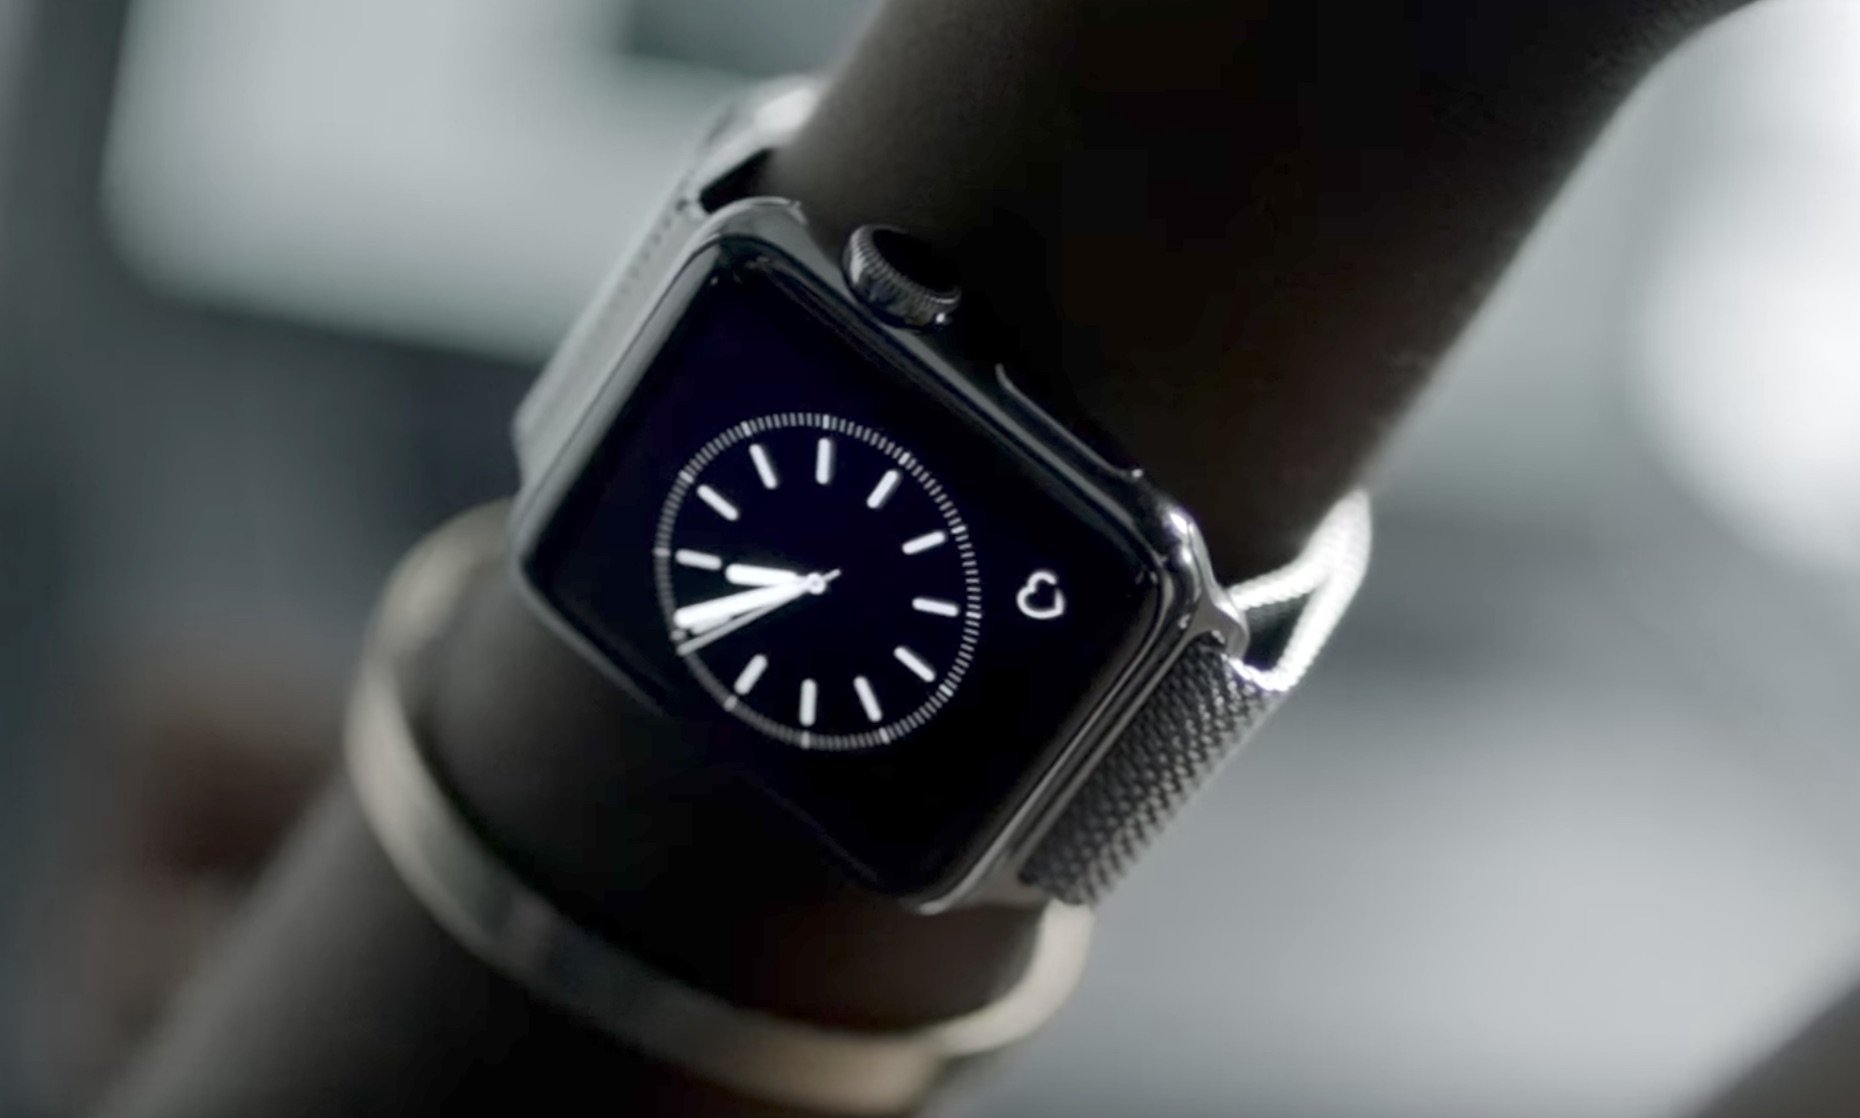 Apple Watch Bands: Nike kündigt neue Modelle mit passenden Schuhen an 1